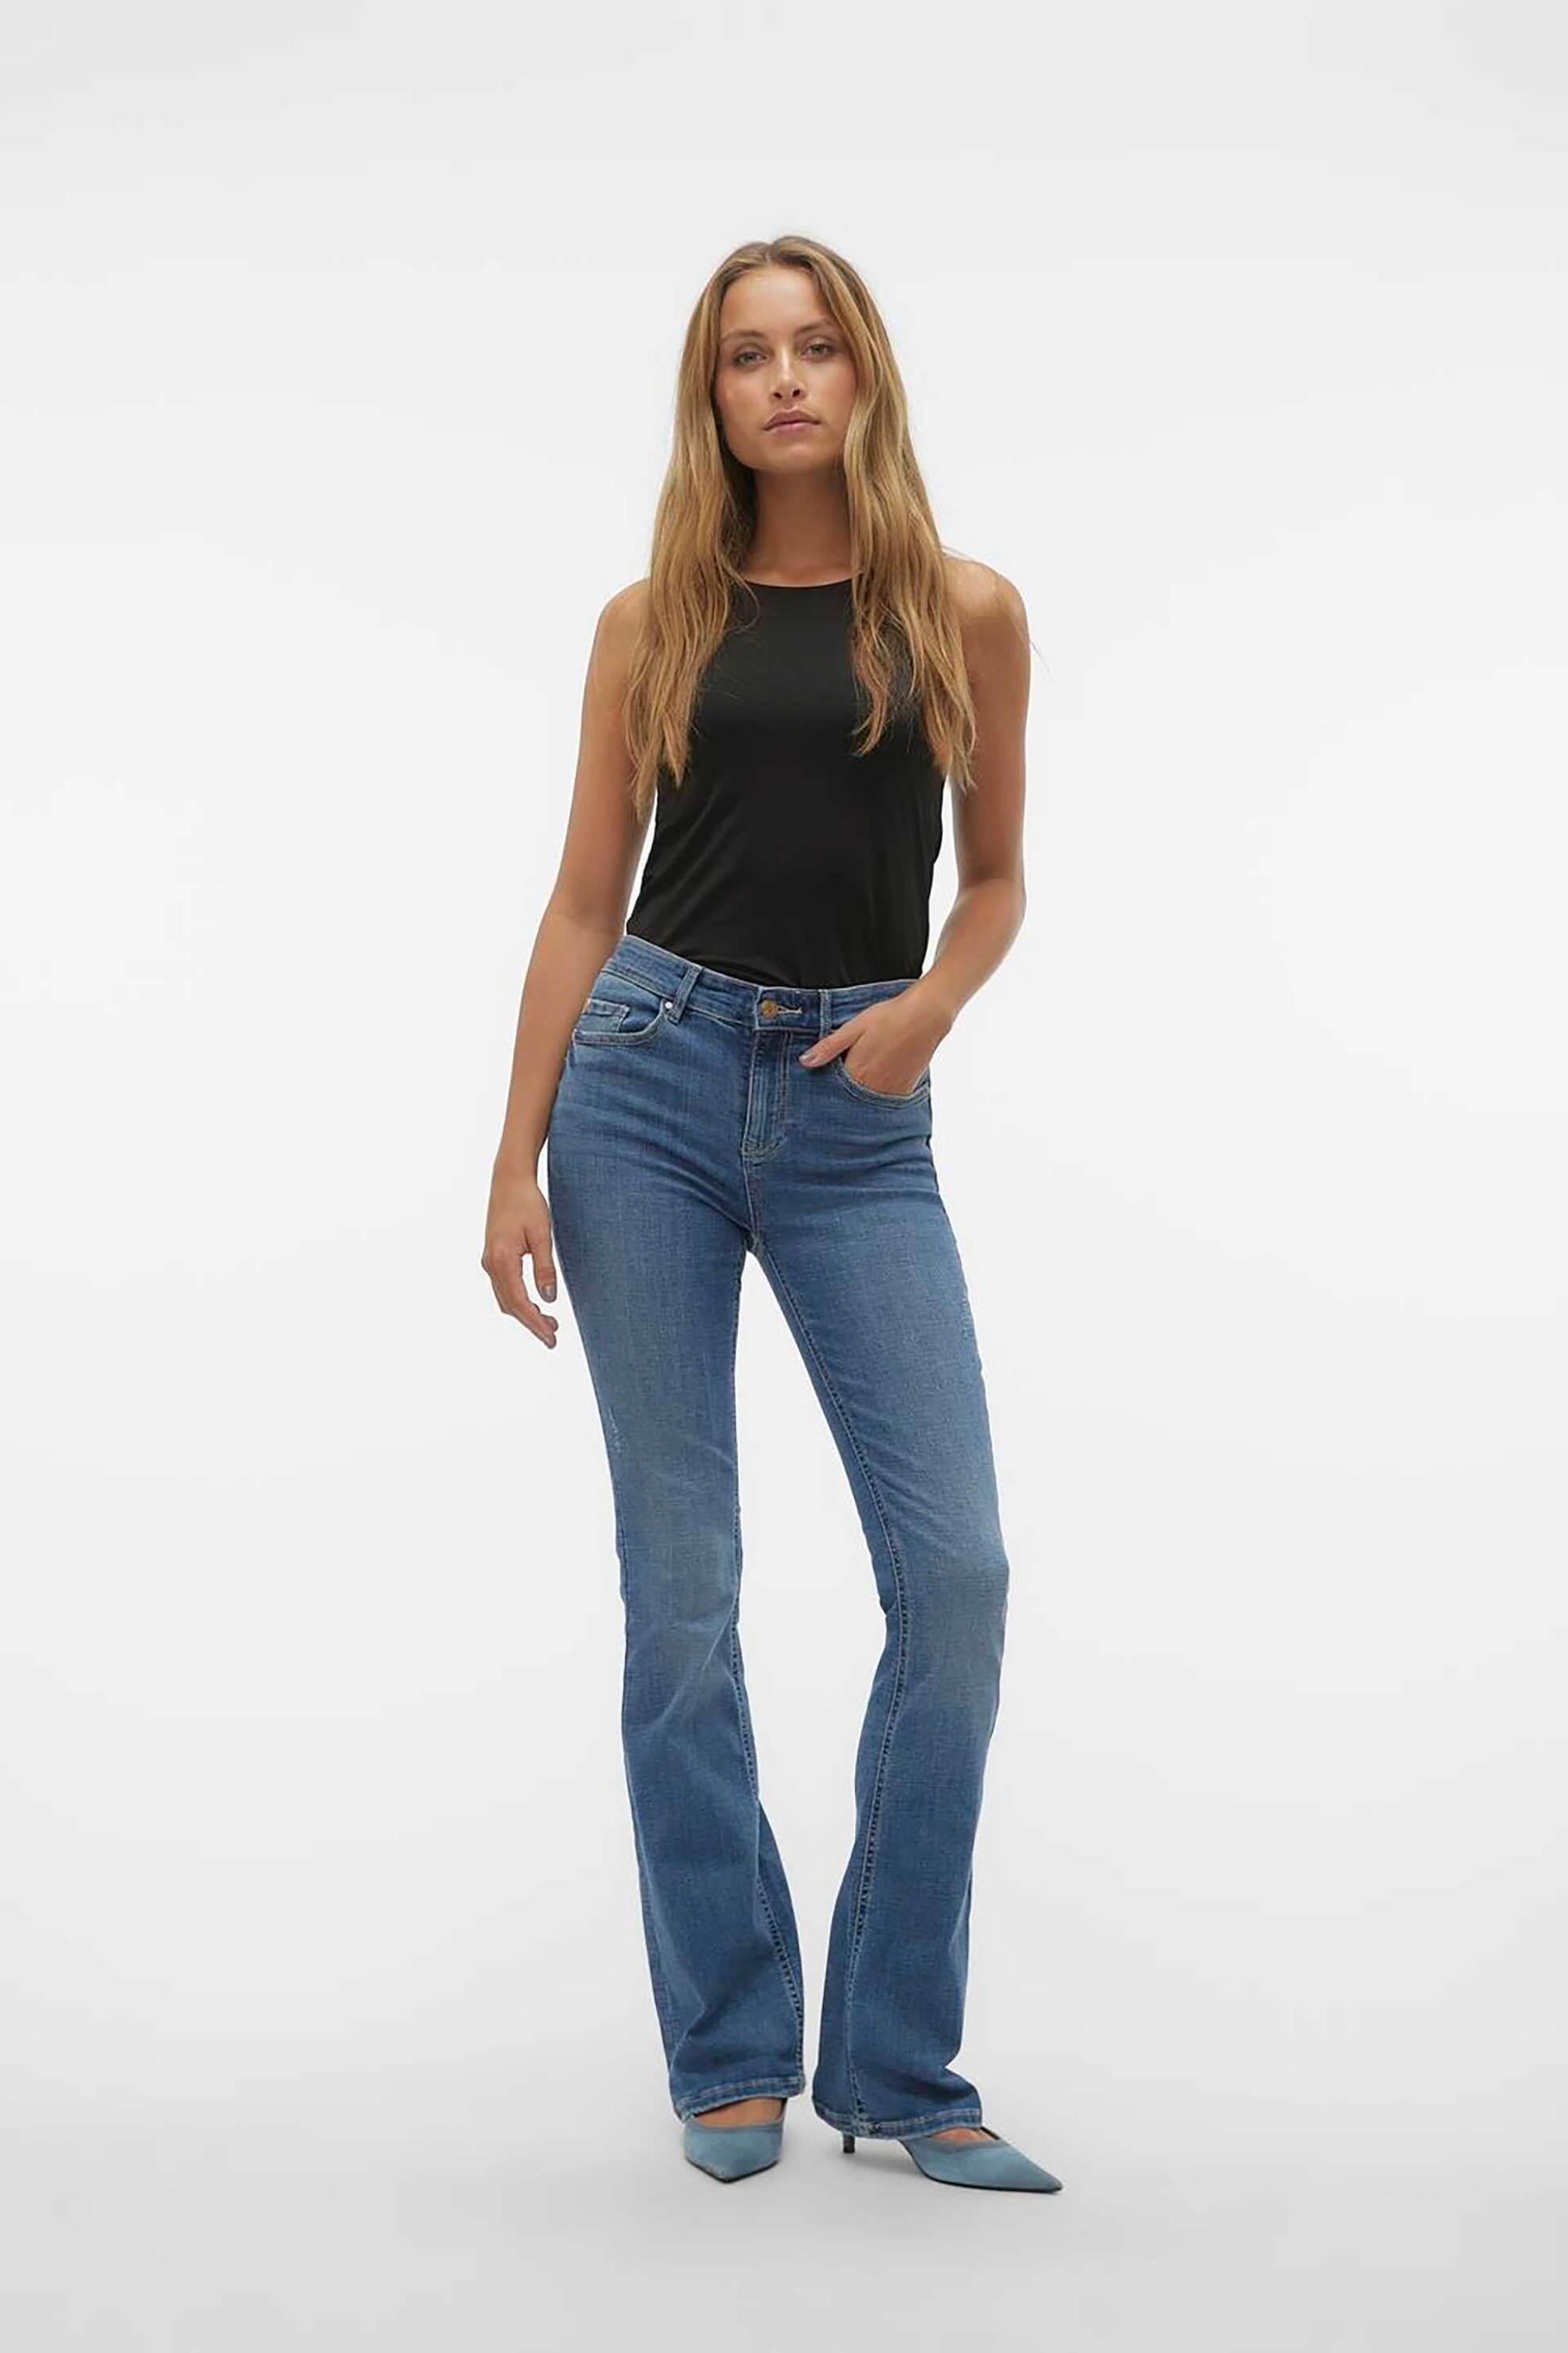 Γυναίκα > ΡΟΥΧΑ > Jeans > Καμπάνα & Bootcut Vero Moda γυναικείο τζην παντελόνι πεντάτσεπο Flared Fit - 10302478 Denim Blue